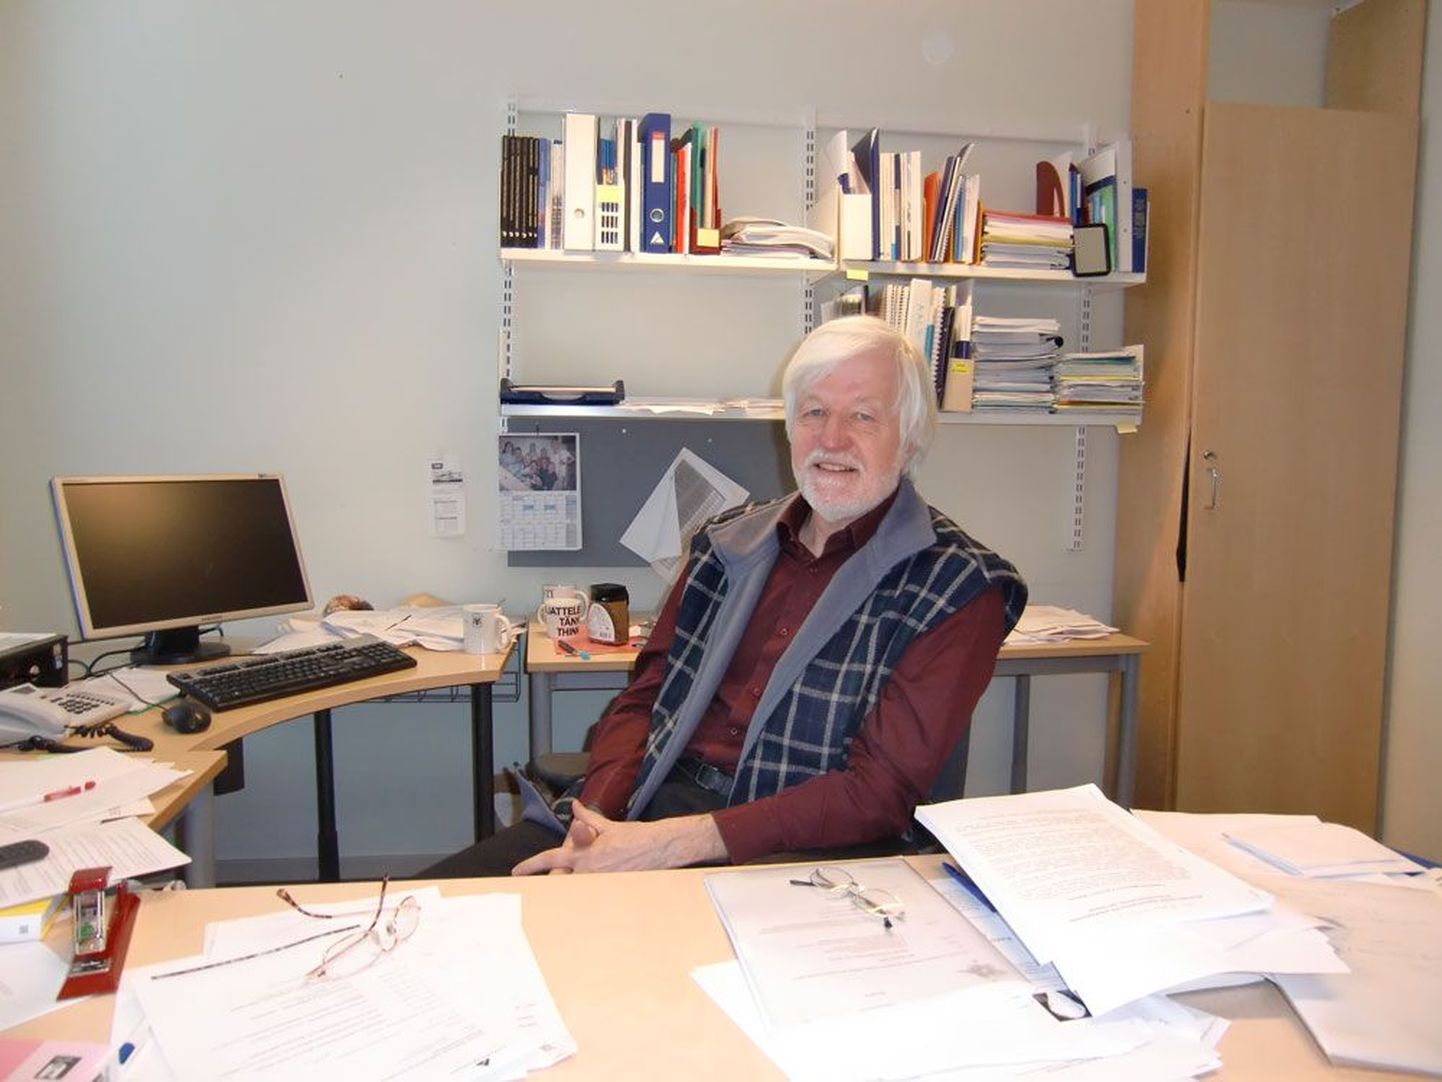 Helsingi Ülikooli vene keele professor Arto Mustajoki.